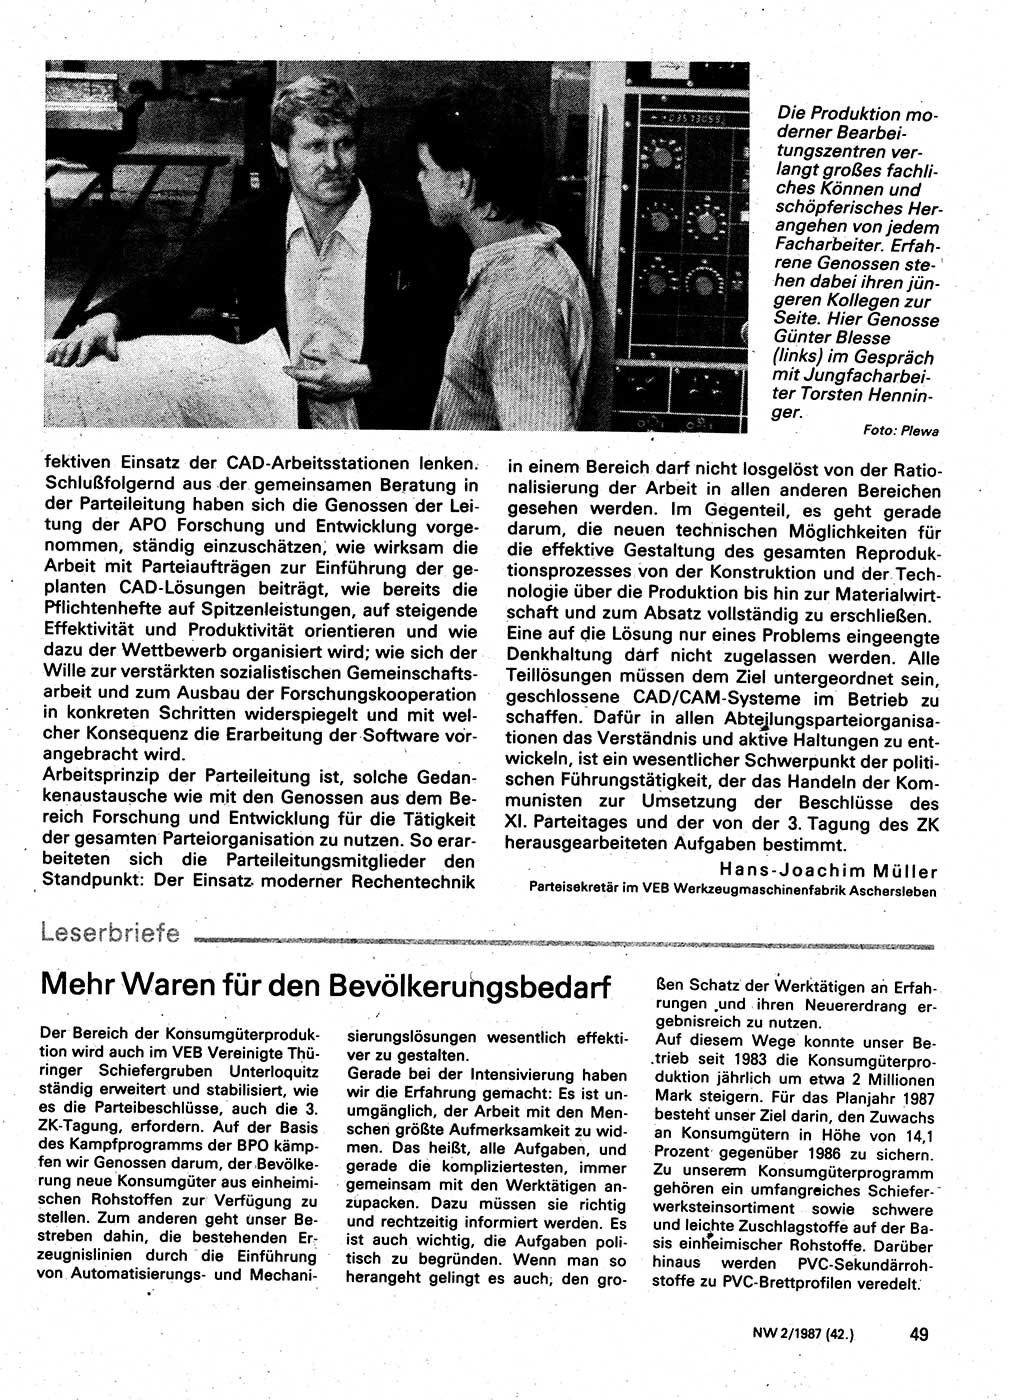 Neuer Weg (NW), Organ des Zentralkomitees (ZK) der SED (Sozialistische Einheitspartei Deutschlands) für Fragen des Parteilebens, 42. Jahrgang [Deutsche Demokratische Republik (DDR)] 1987, Seite 49 (NW ZK SED DDR 1987, S. 49)